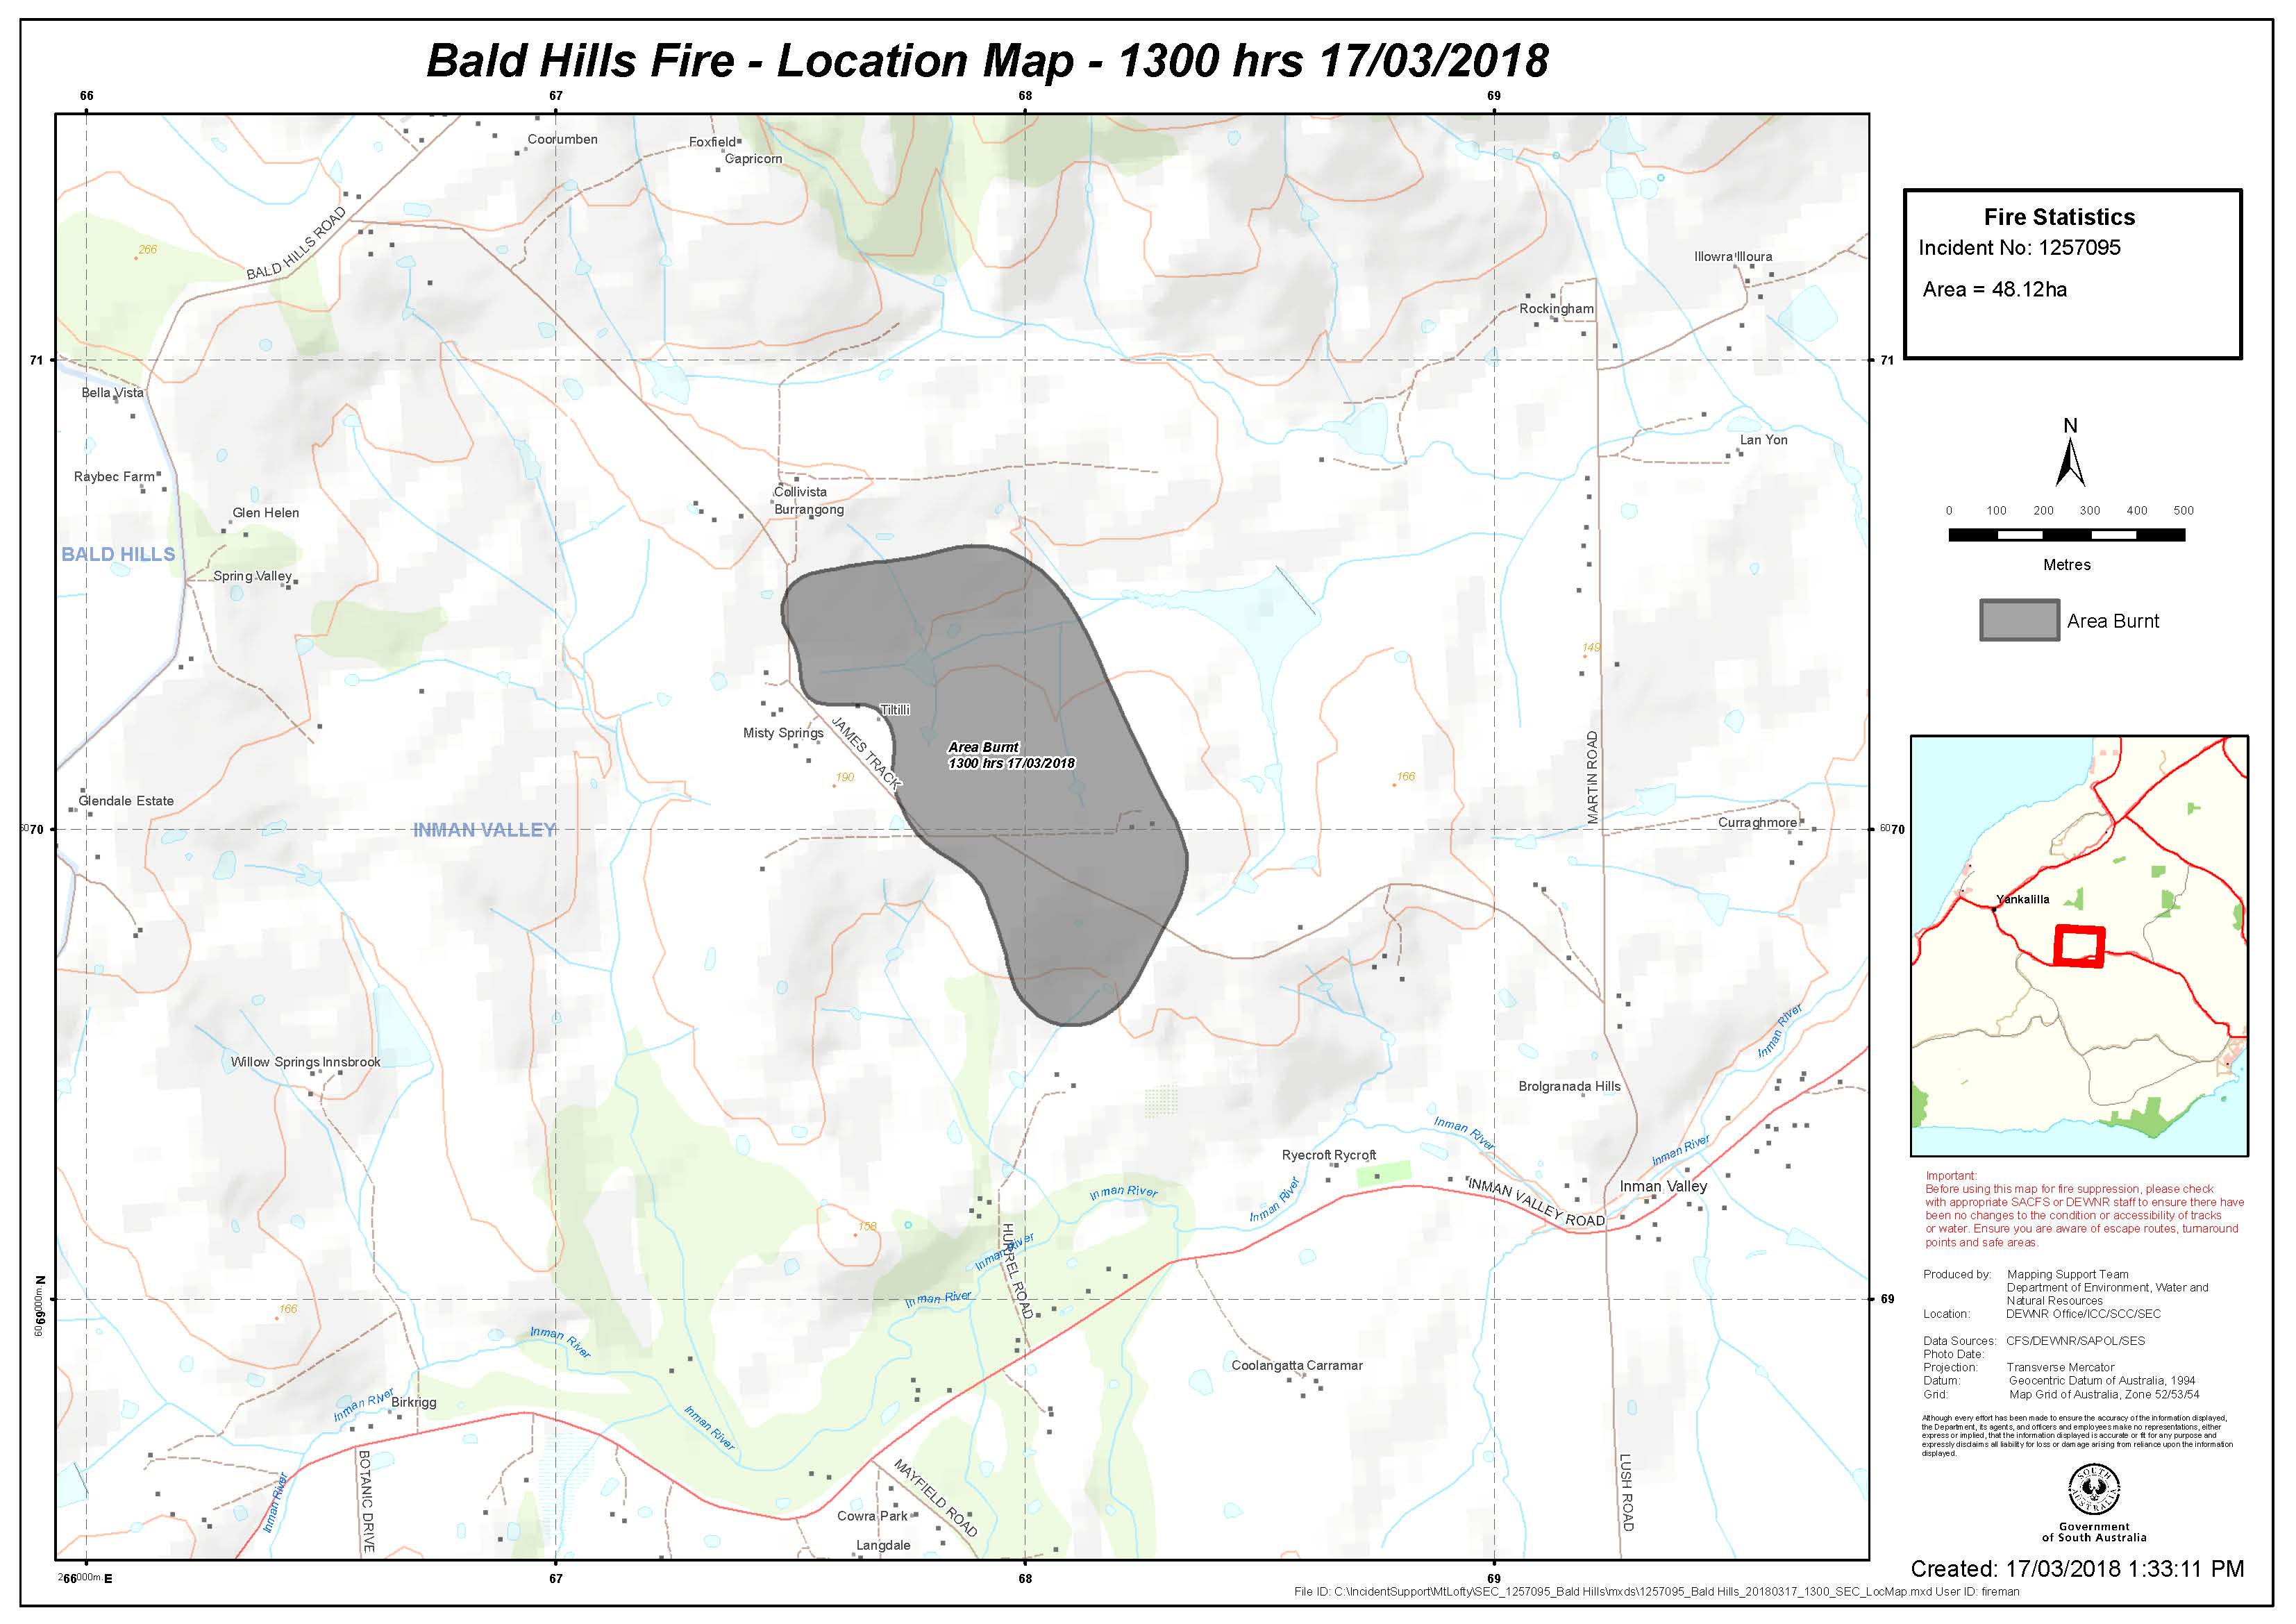 Bald Hills Fire - Location Map - 1300 hrs 17/03/2018